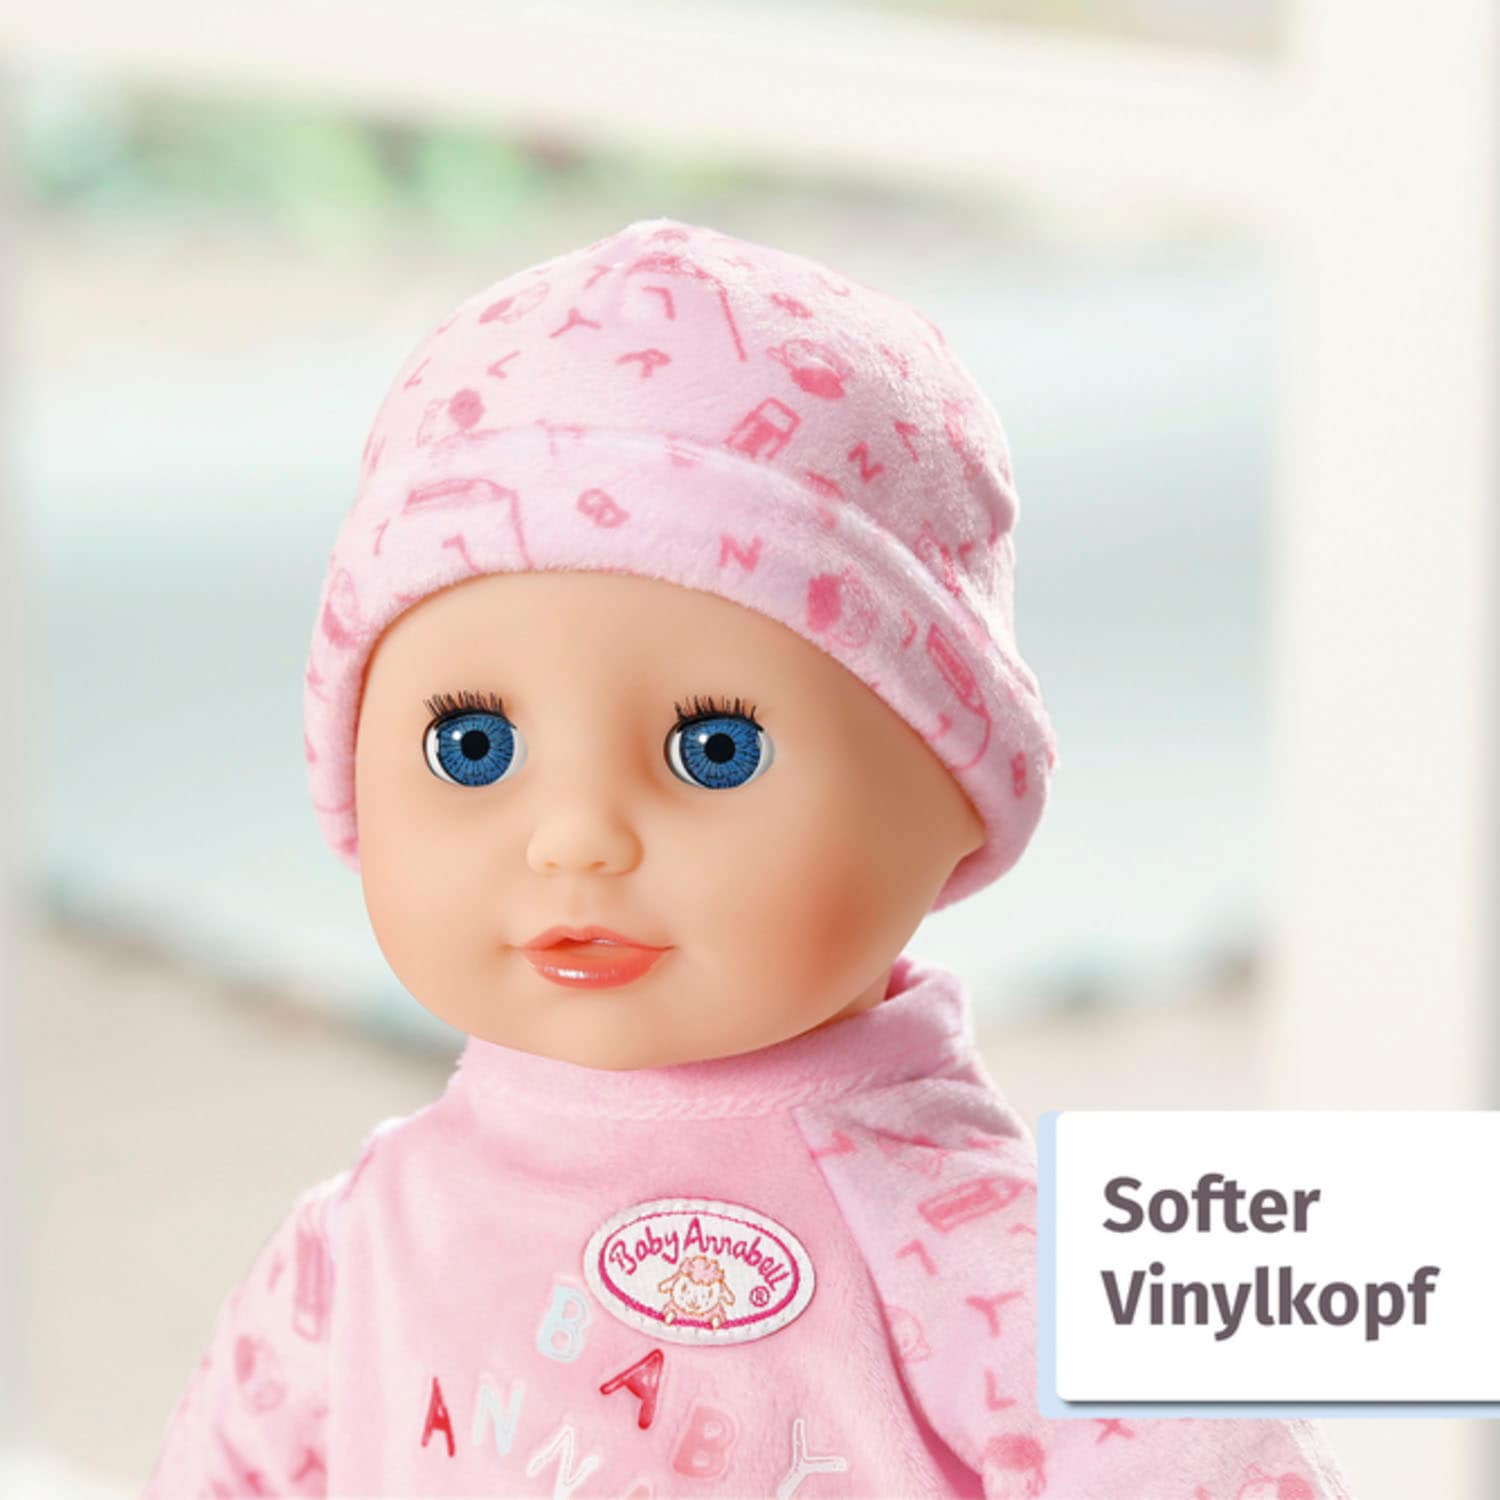 Baby Annabell Babypuppe »Little Annabell, 36 cm«, mit Schlafaugen